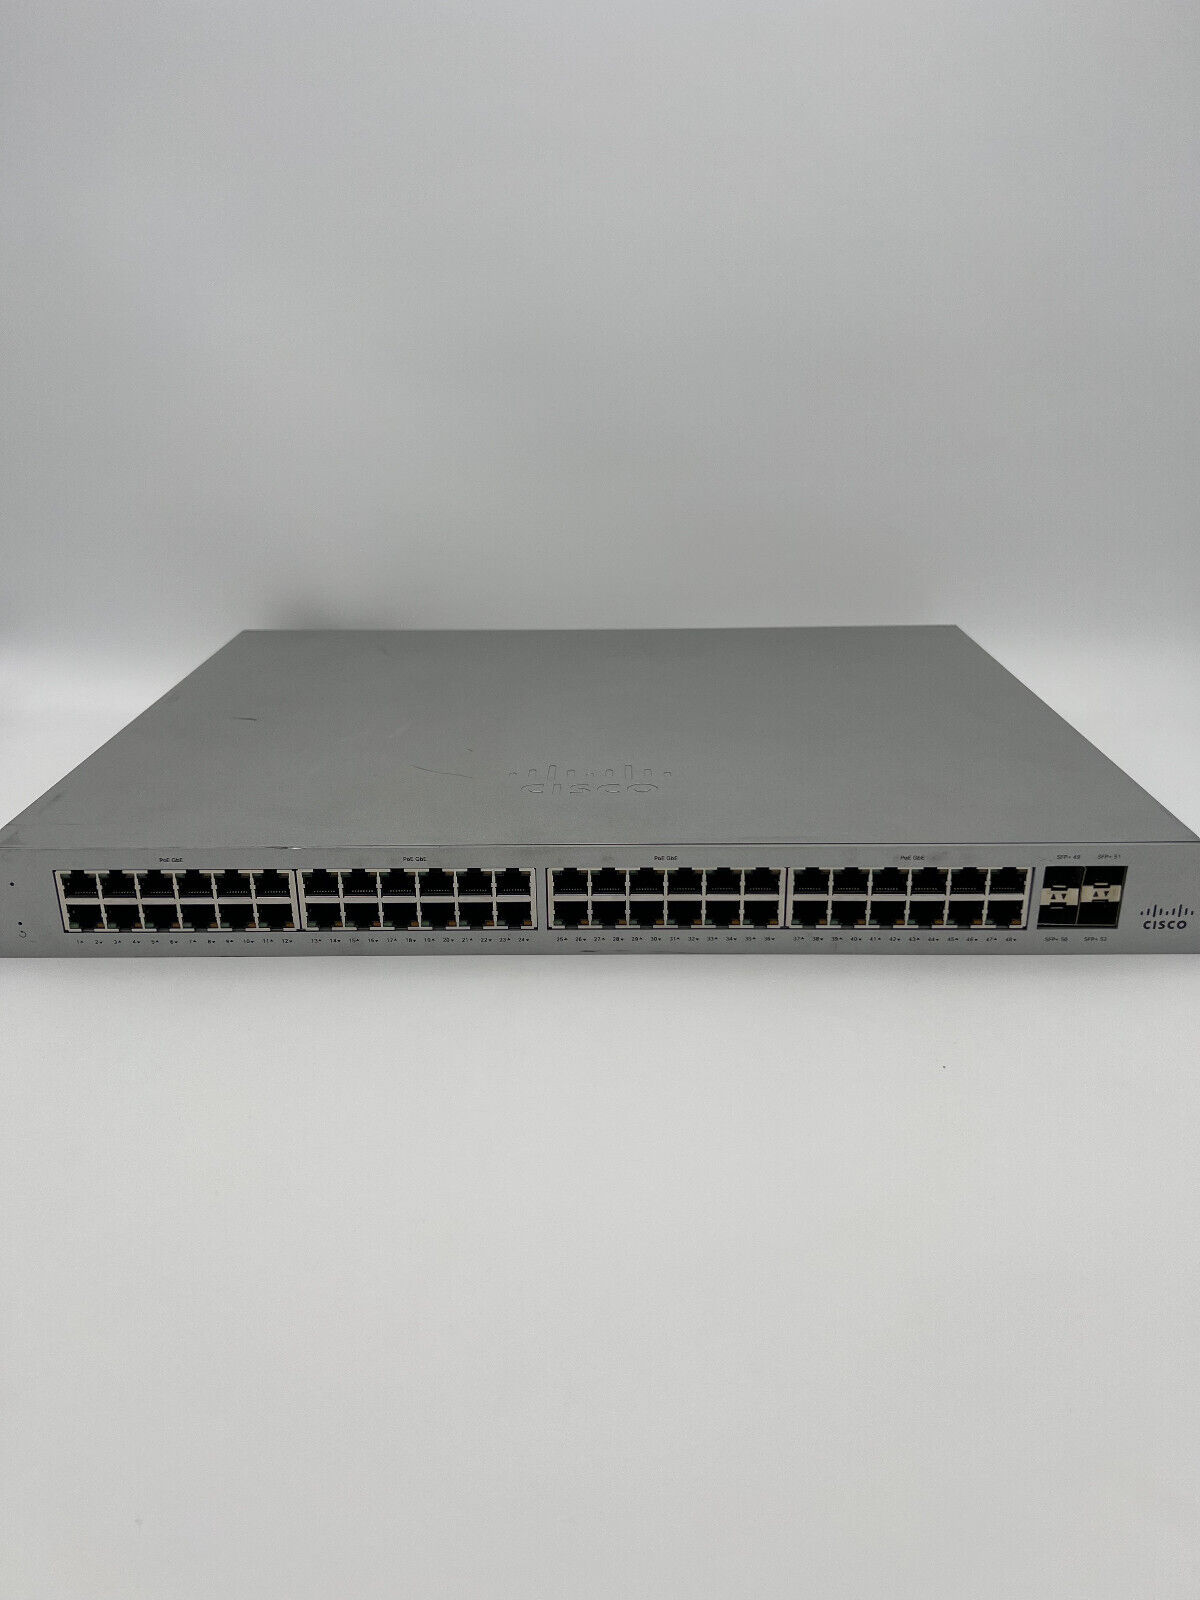 Cisco Meraki MS125-48LP - 52 Ports Fully Managed Ethernet Switch **UNCLAIMED**